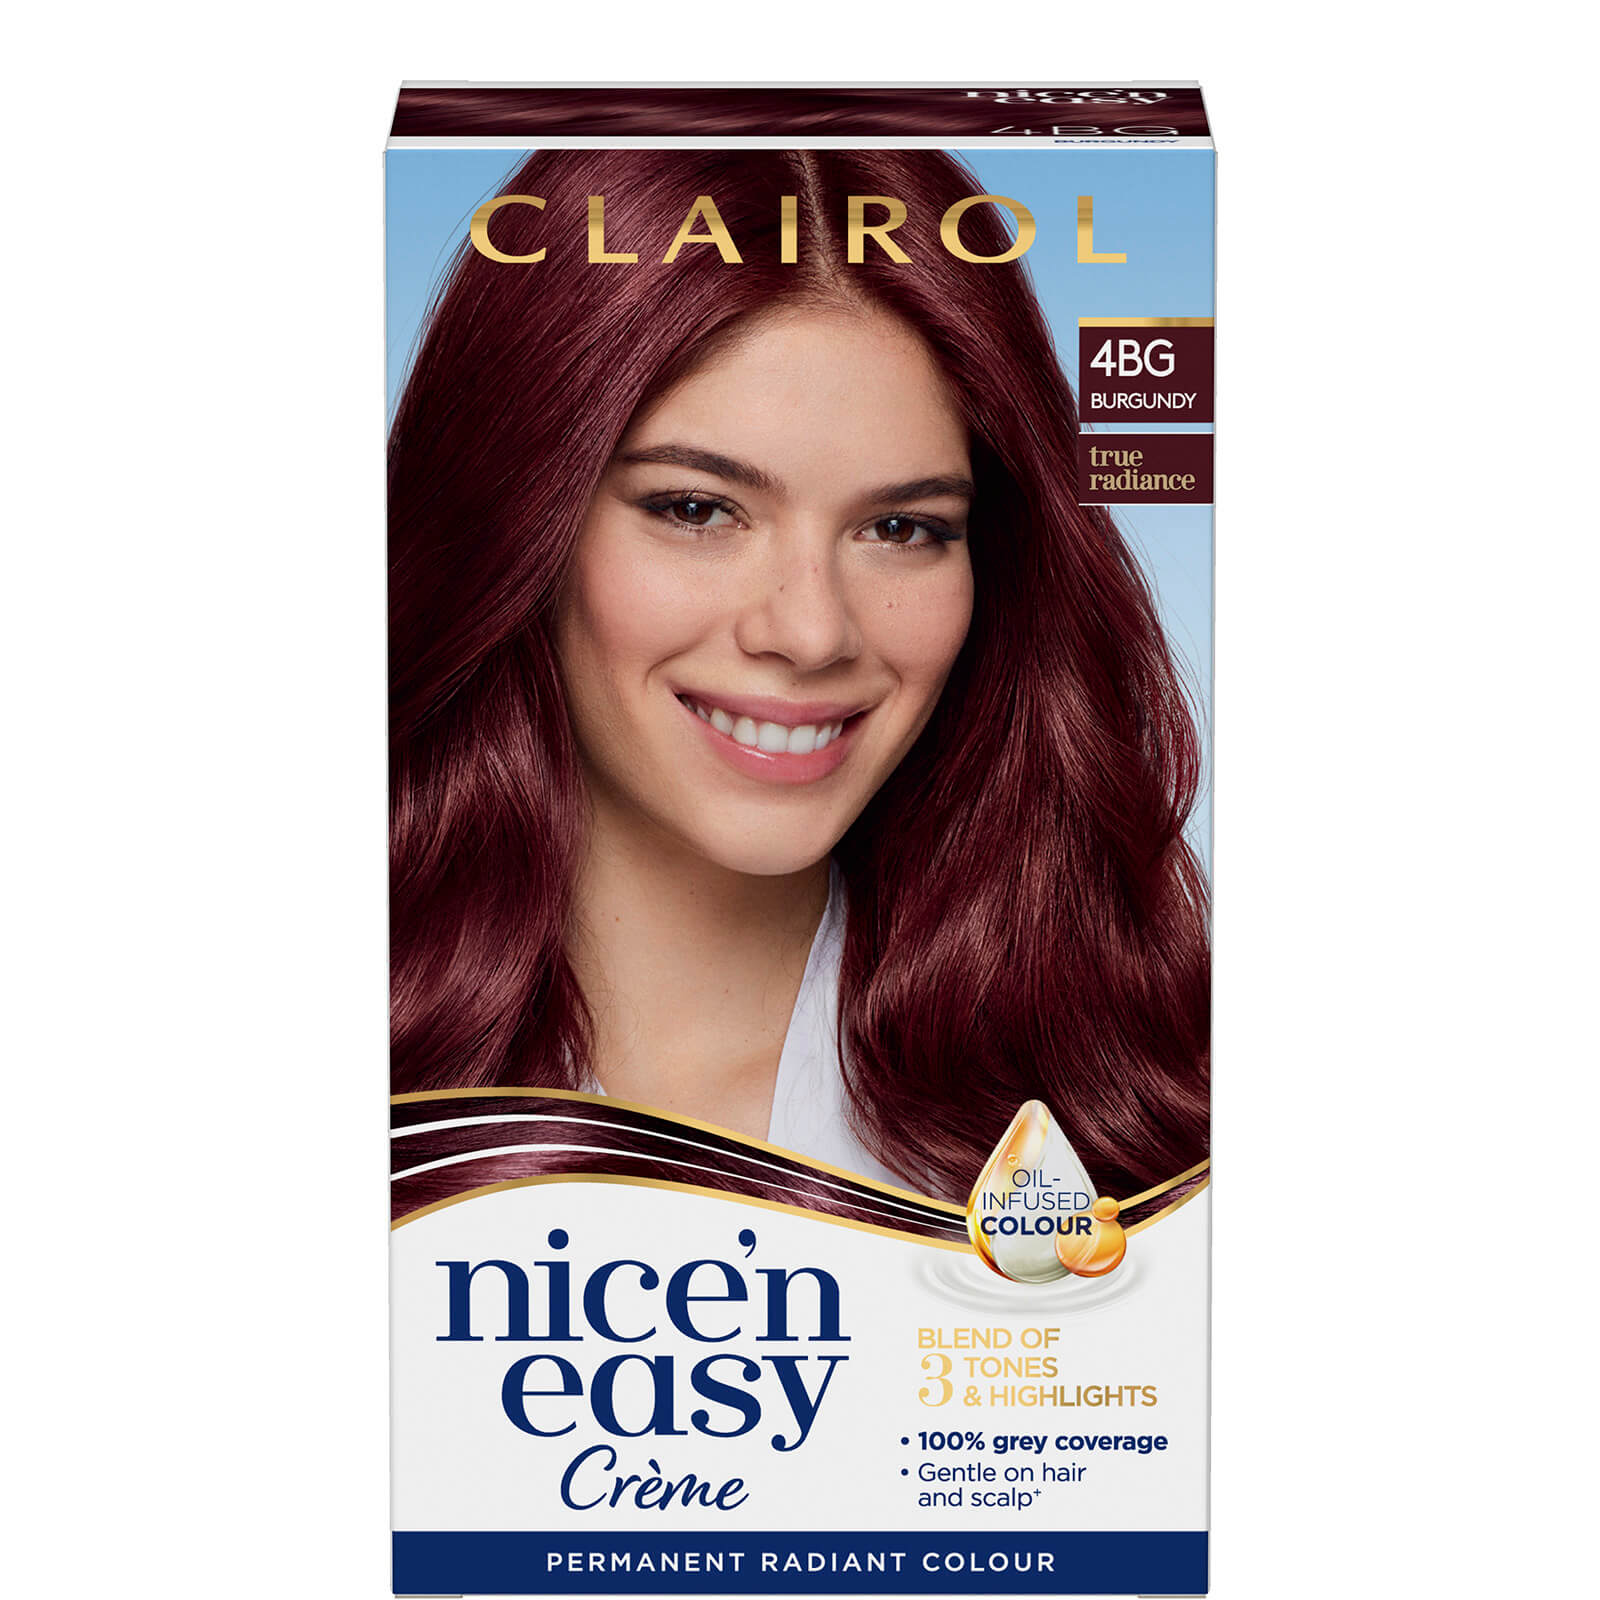 Clairol Nice' n Easy Crème Natural Looking Oil Infused Permanent Hair Dye 177ml (Various Shades) - 4BG Burgundy